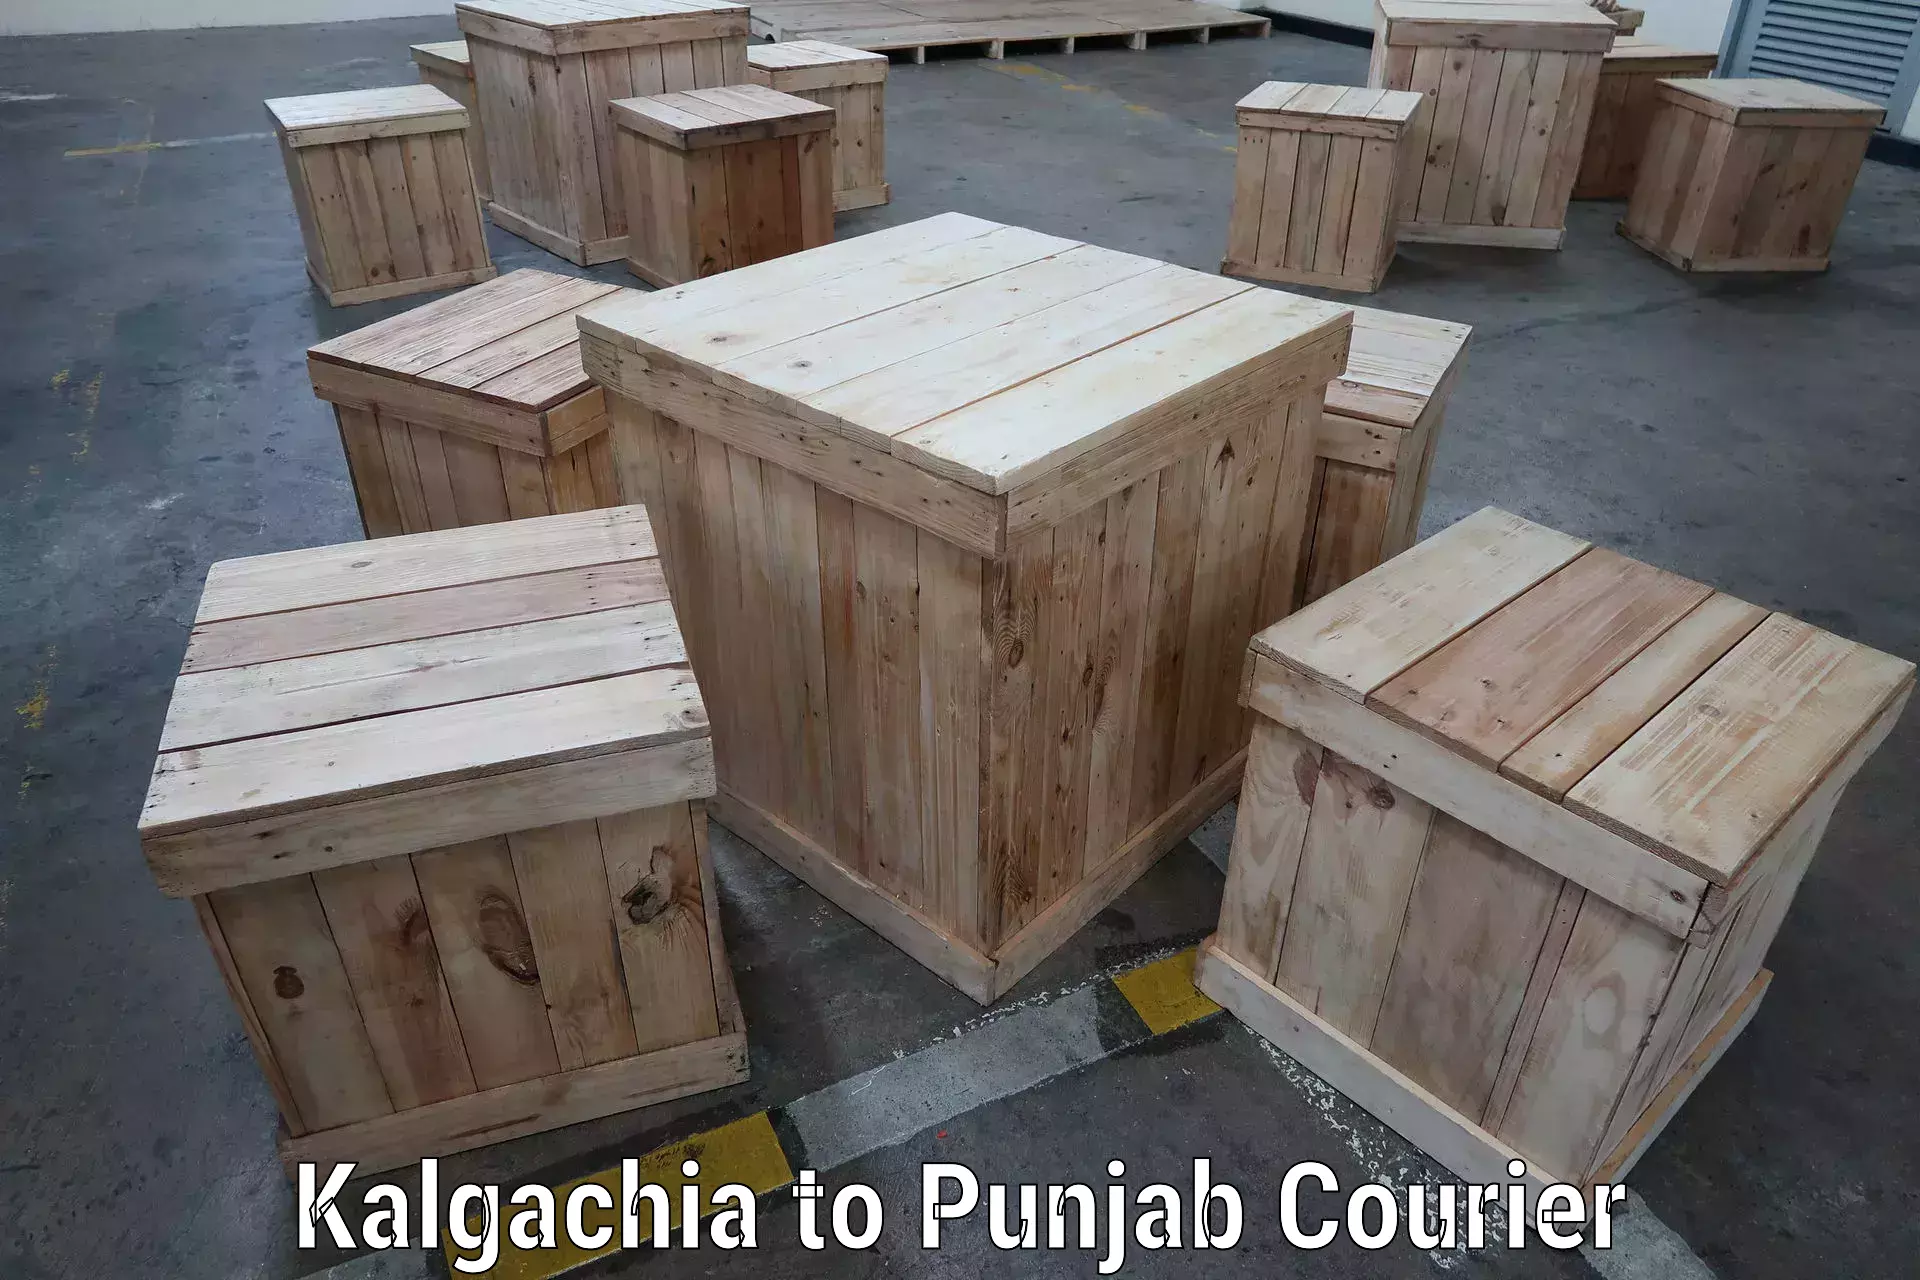 Tech-enabled shipping Kalgachia to Ajnala